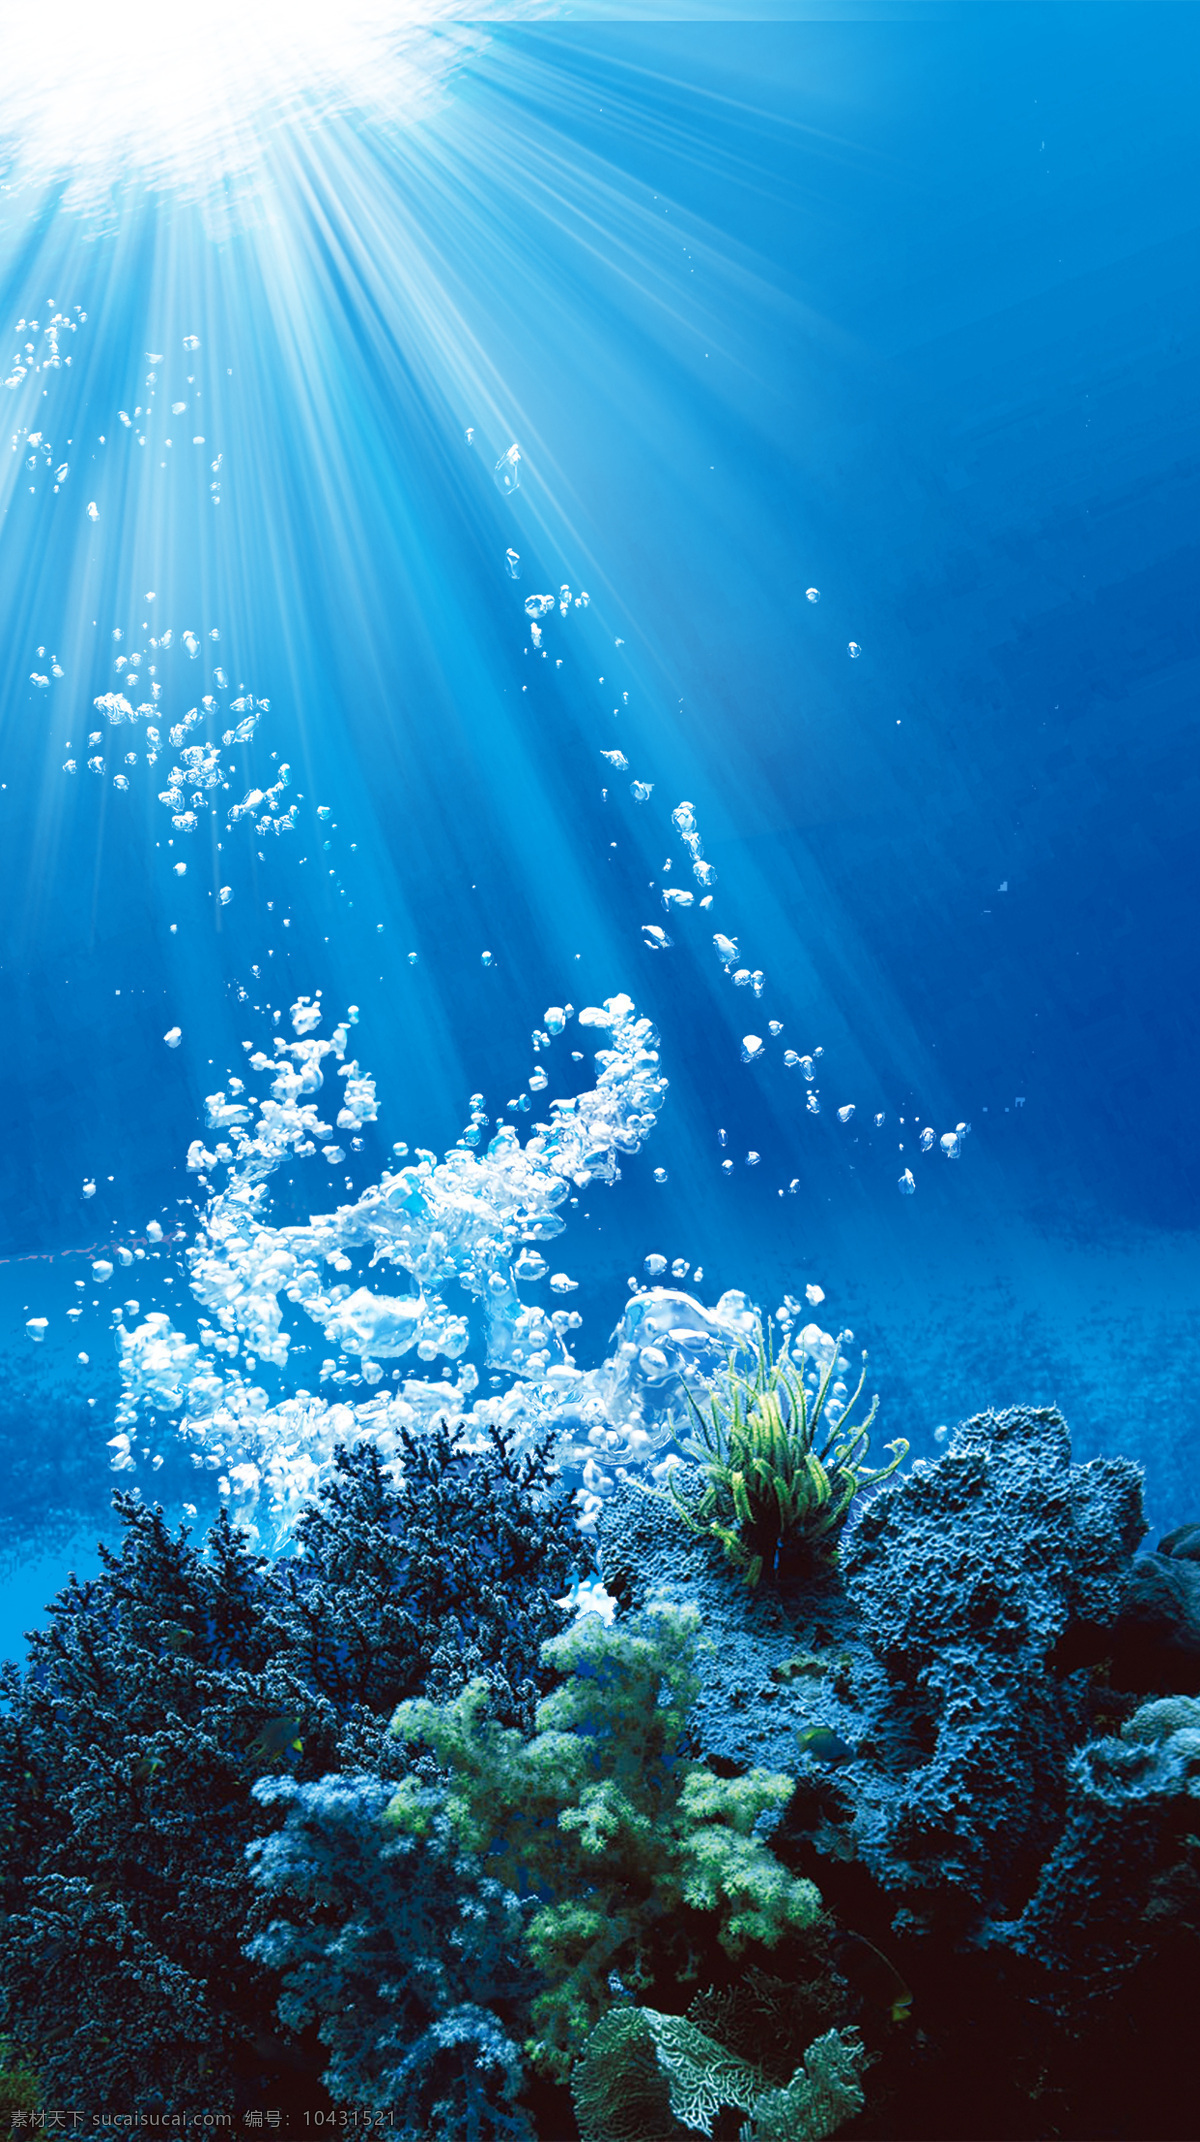 唯美 蓝色 珊瑚 h5 背景 蓝色大海 海底 h 5背景